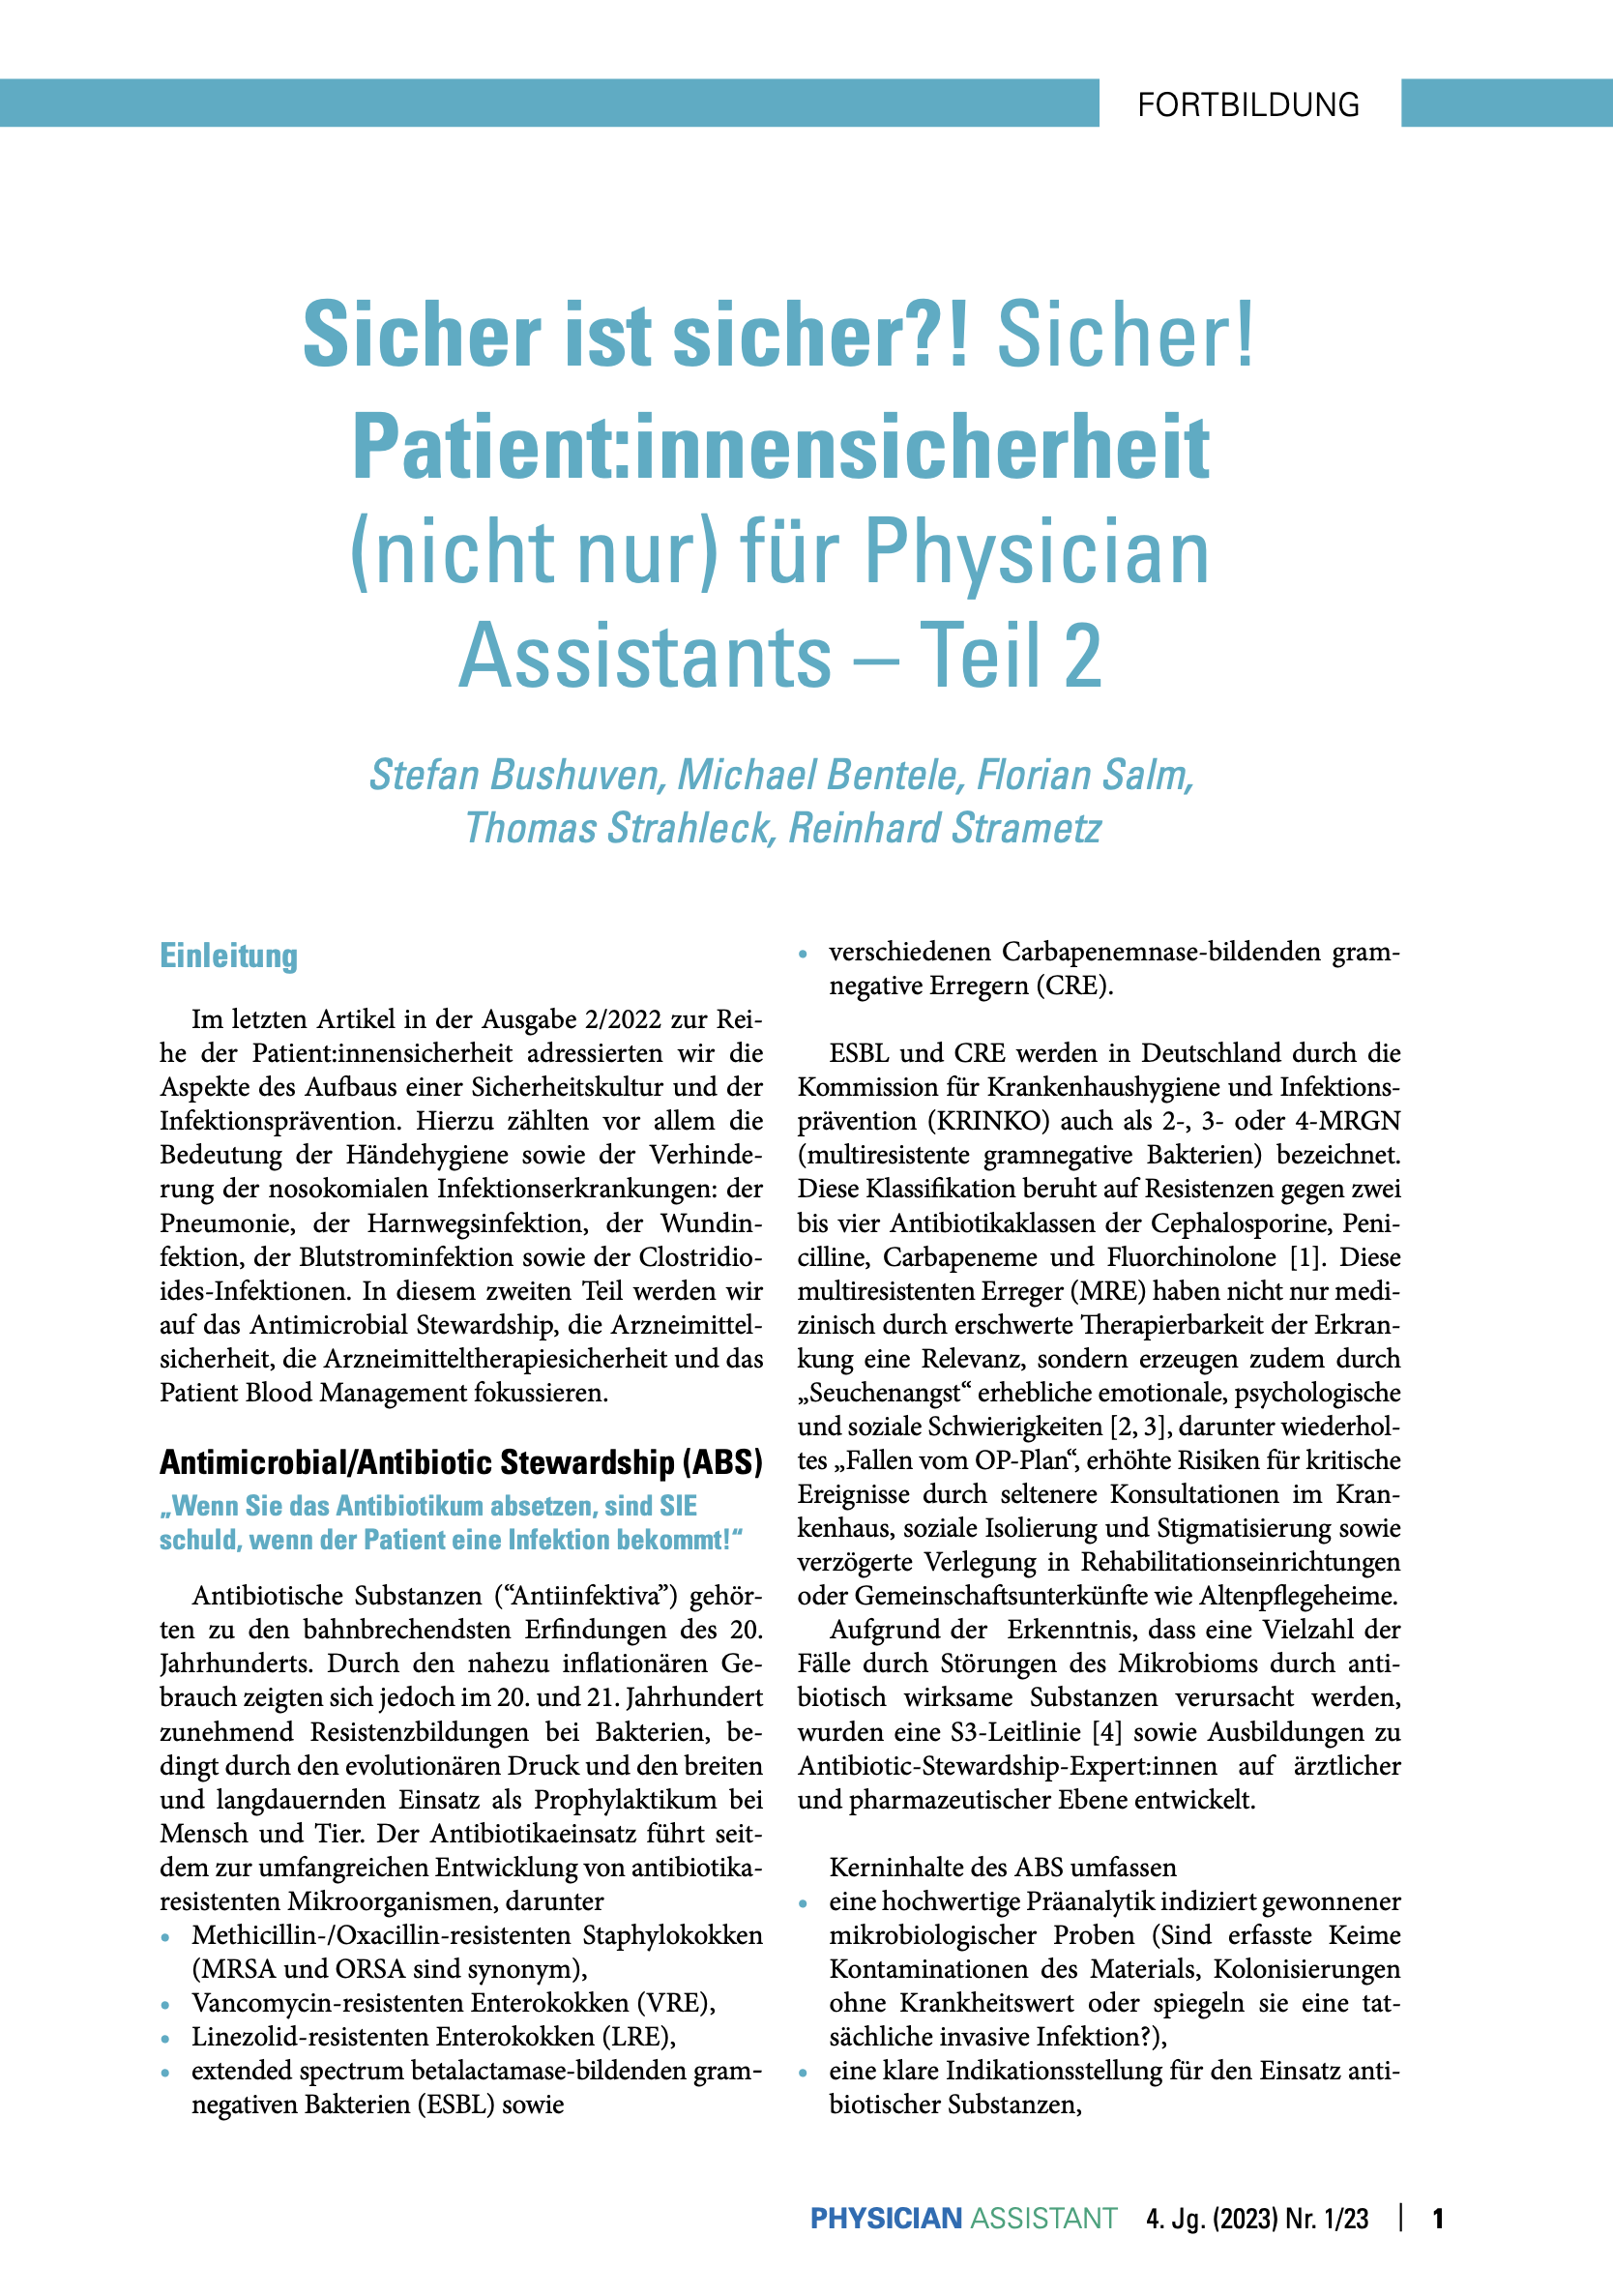 online only Patient:innensicherheit, Teil 2